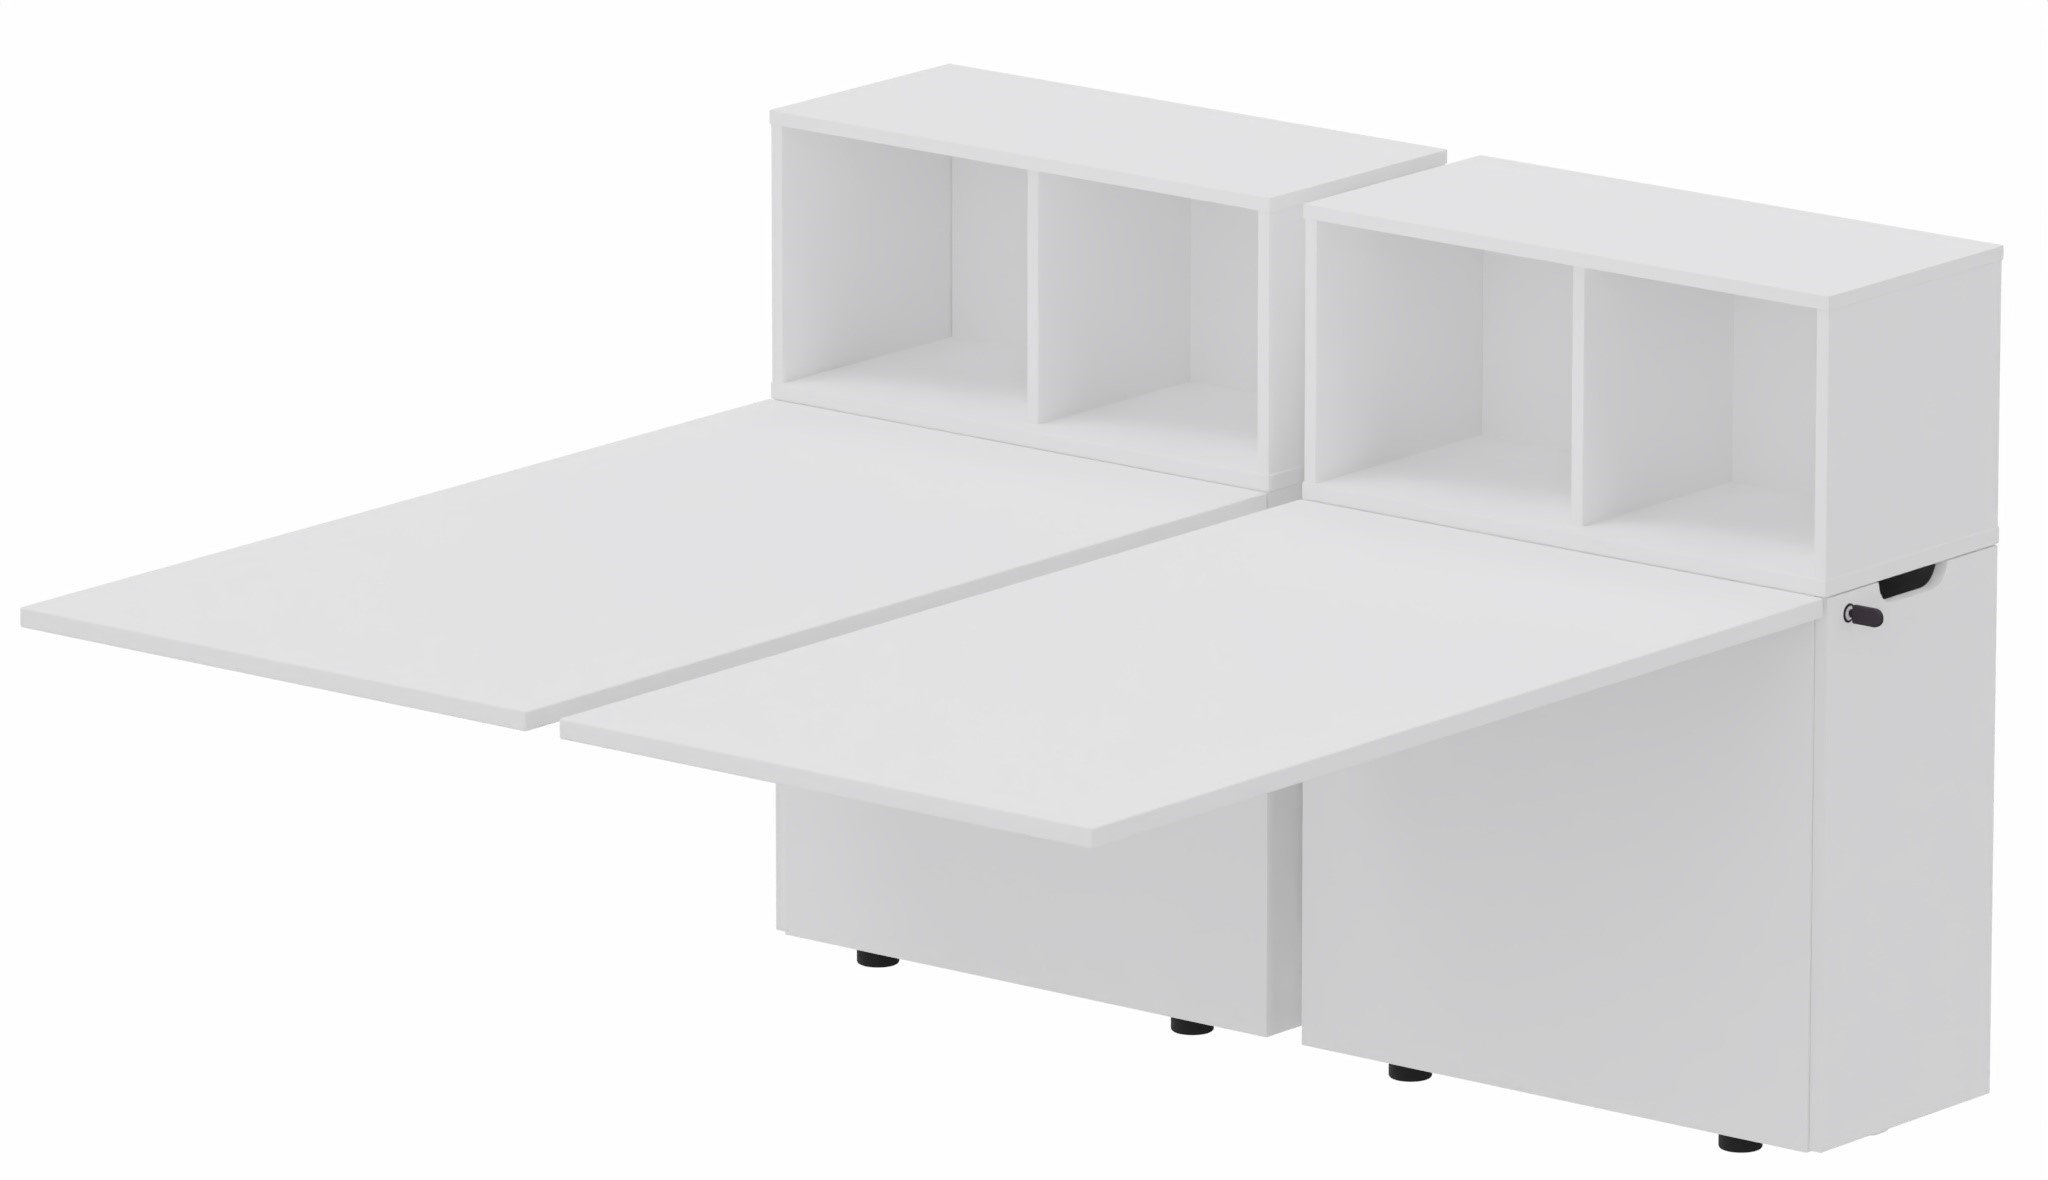 K8 Bench suivant avec niche sur rangement personnel 176x80cm encombrement 176x165cm, plateau blanc, structure blanc